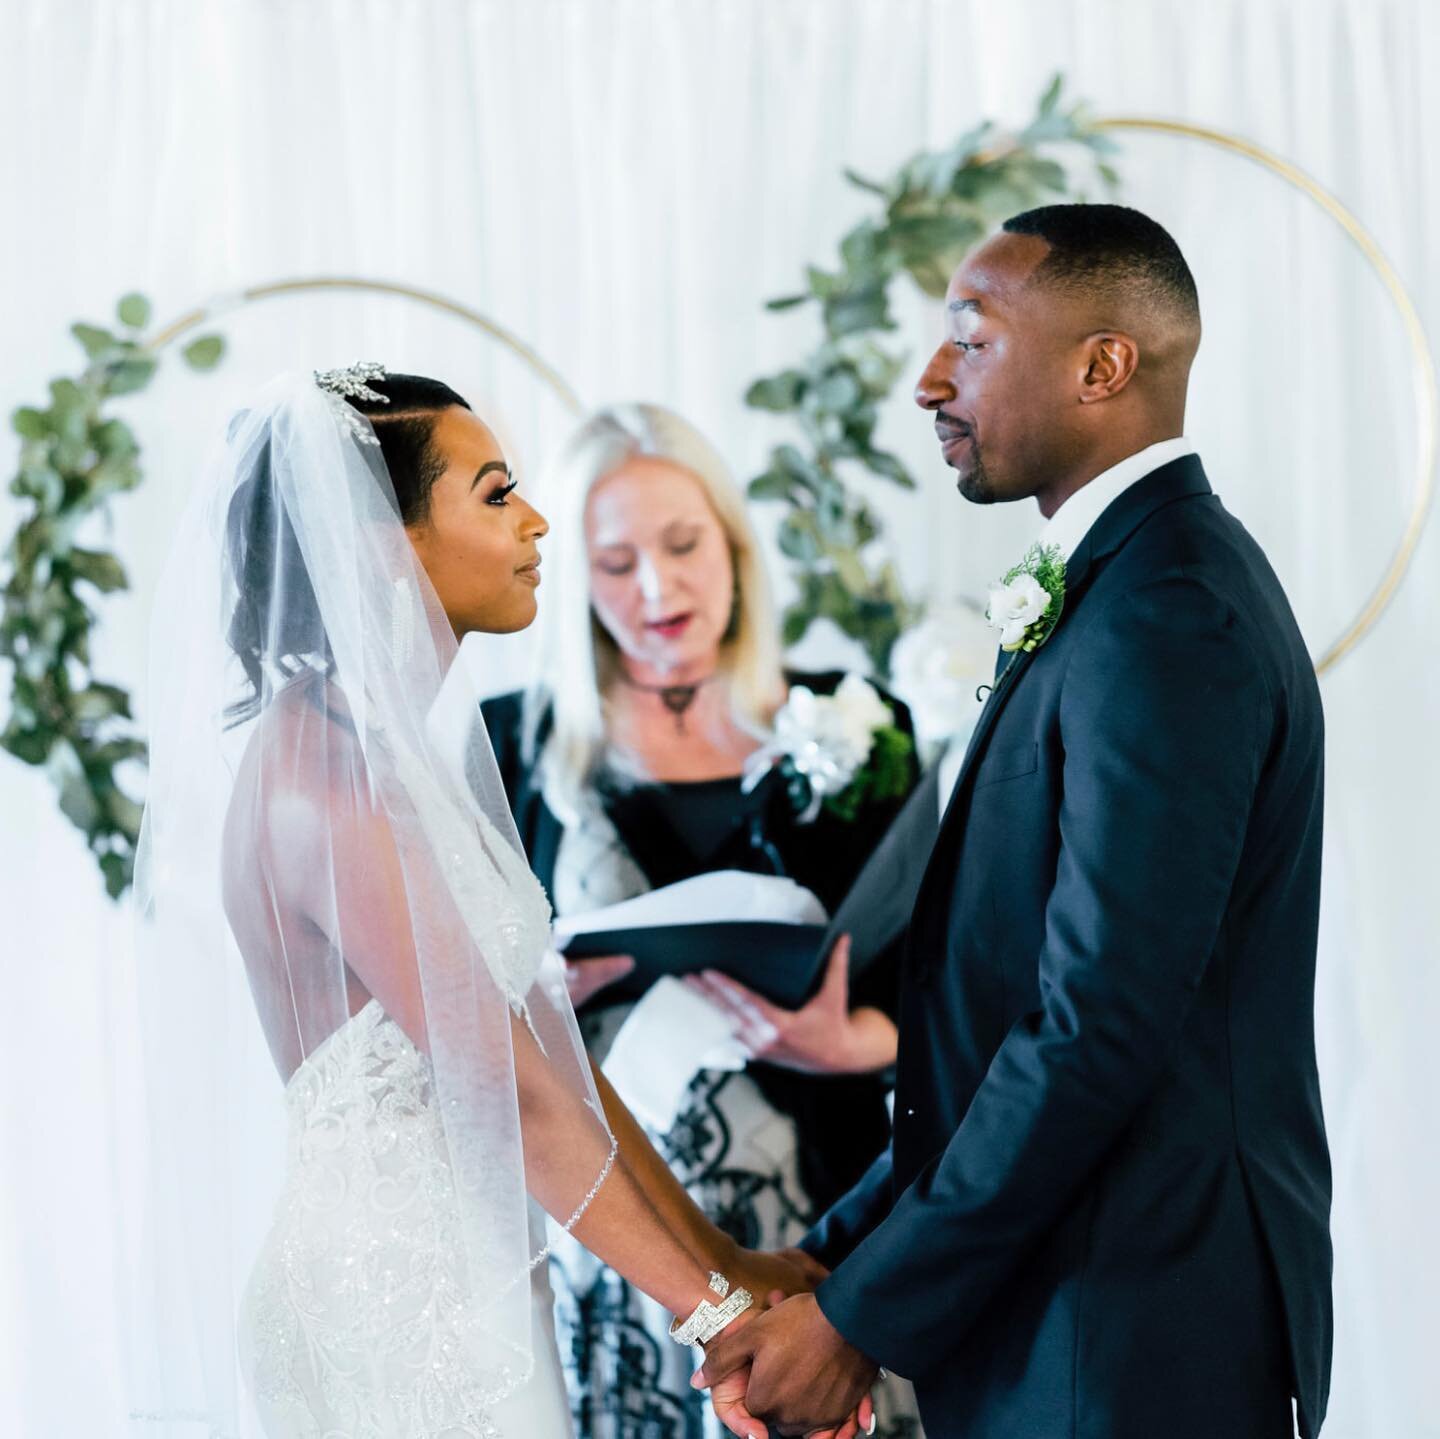 Oferta Foto Nuntă – Păstrează Magia și Emoția Celui Mai Important Moment al Vieții Tale